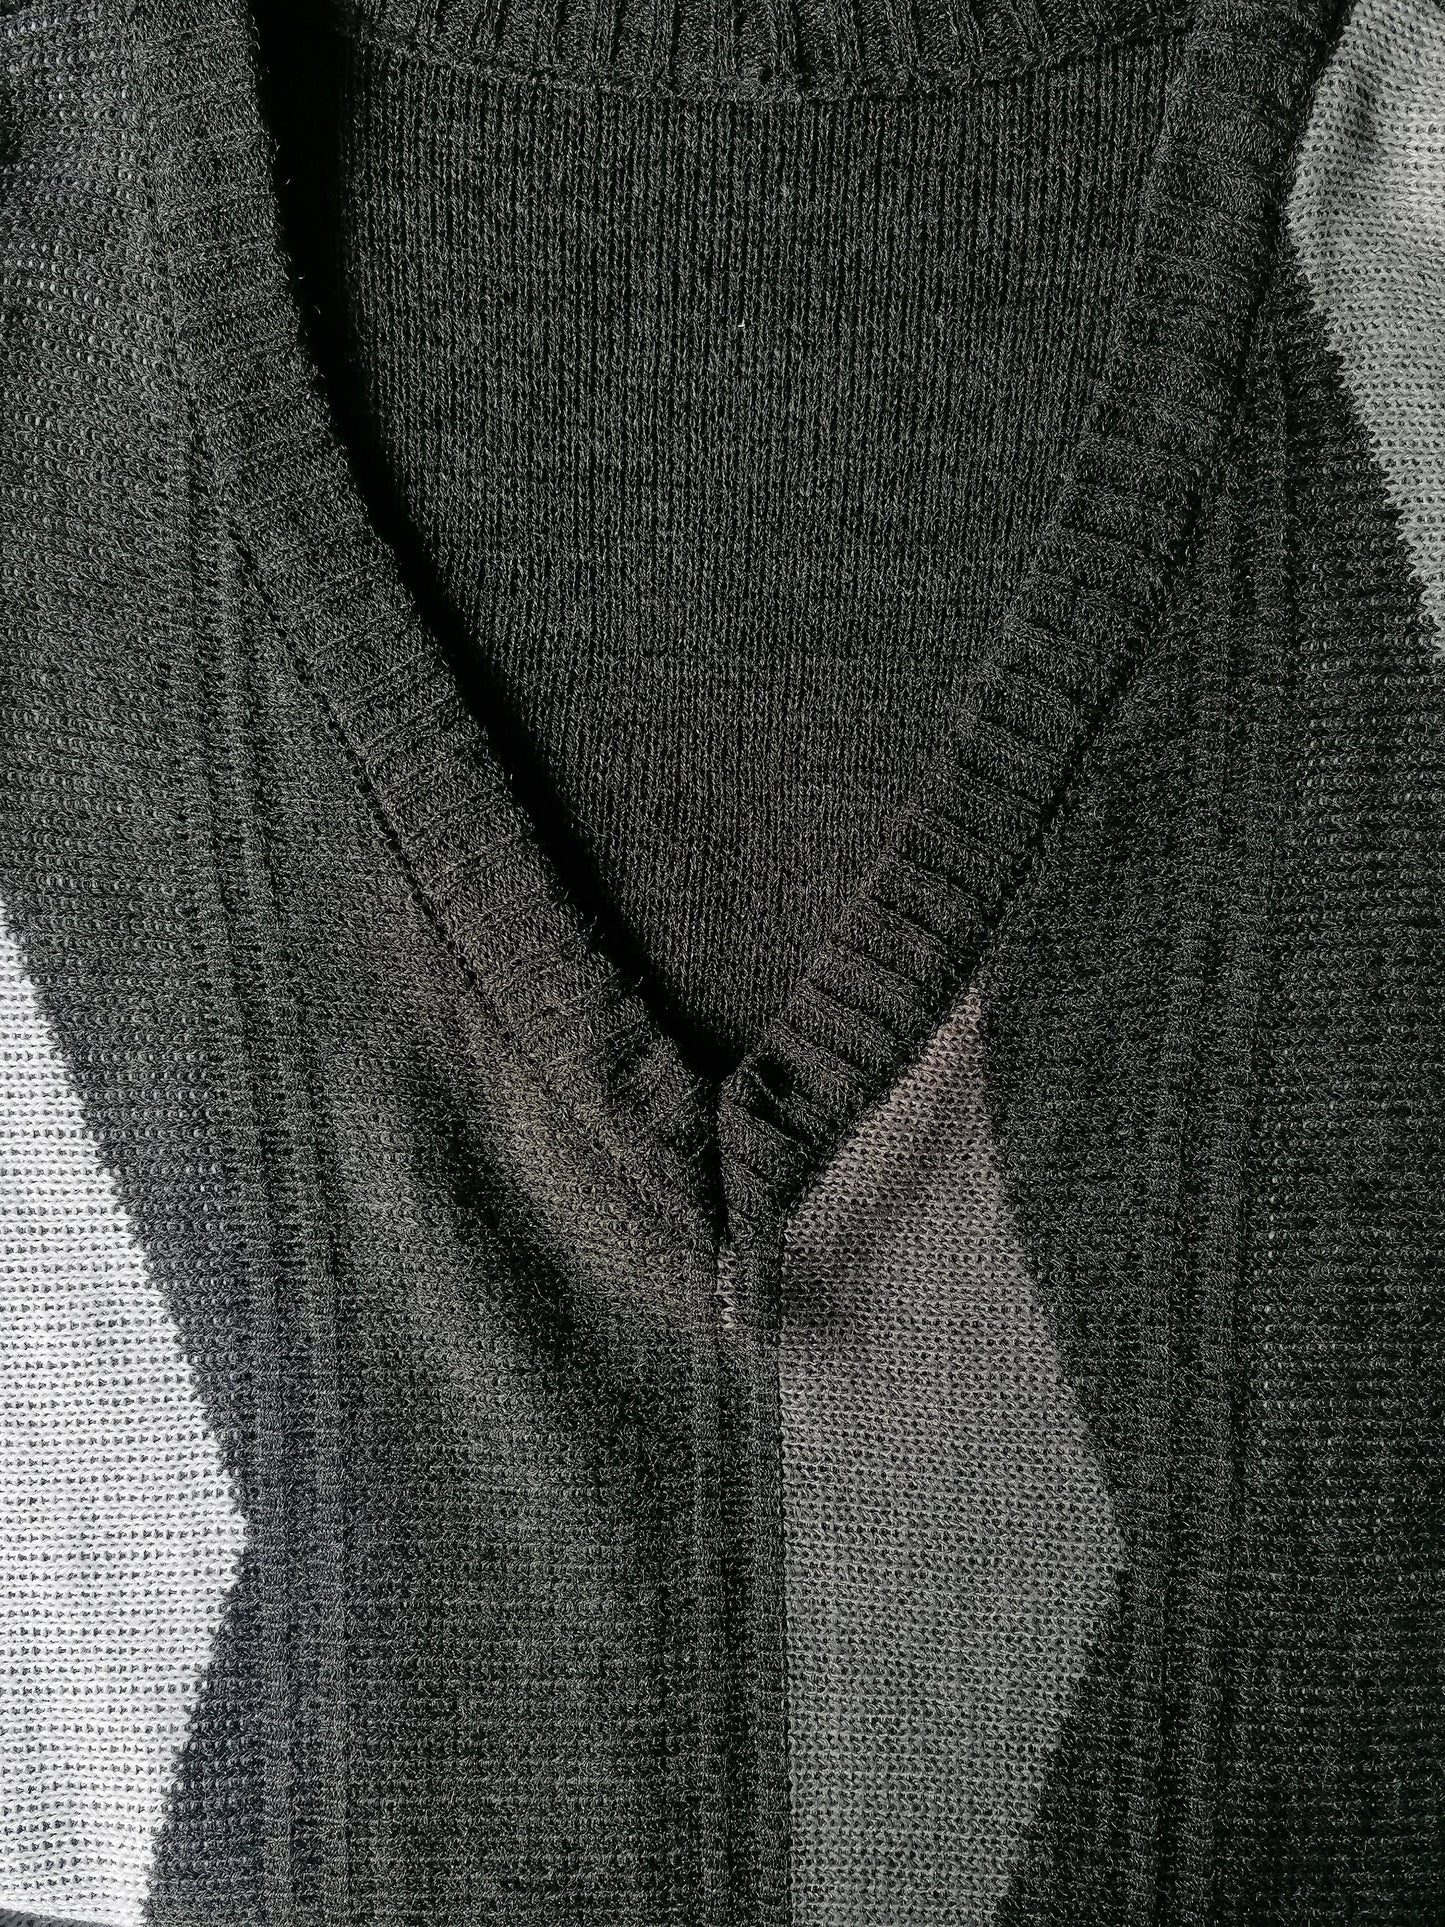 Maglione vintage. Scollo a V. Motivo bianco grigio. Dimensione XXL / 2XL.